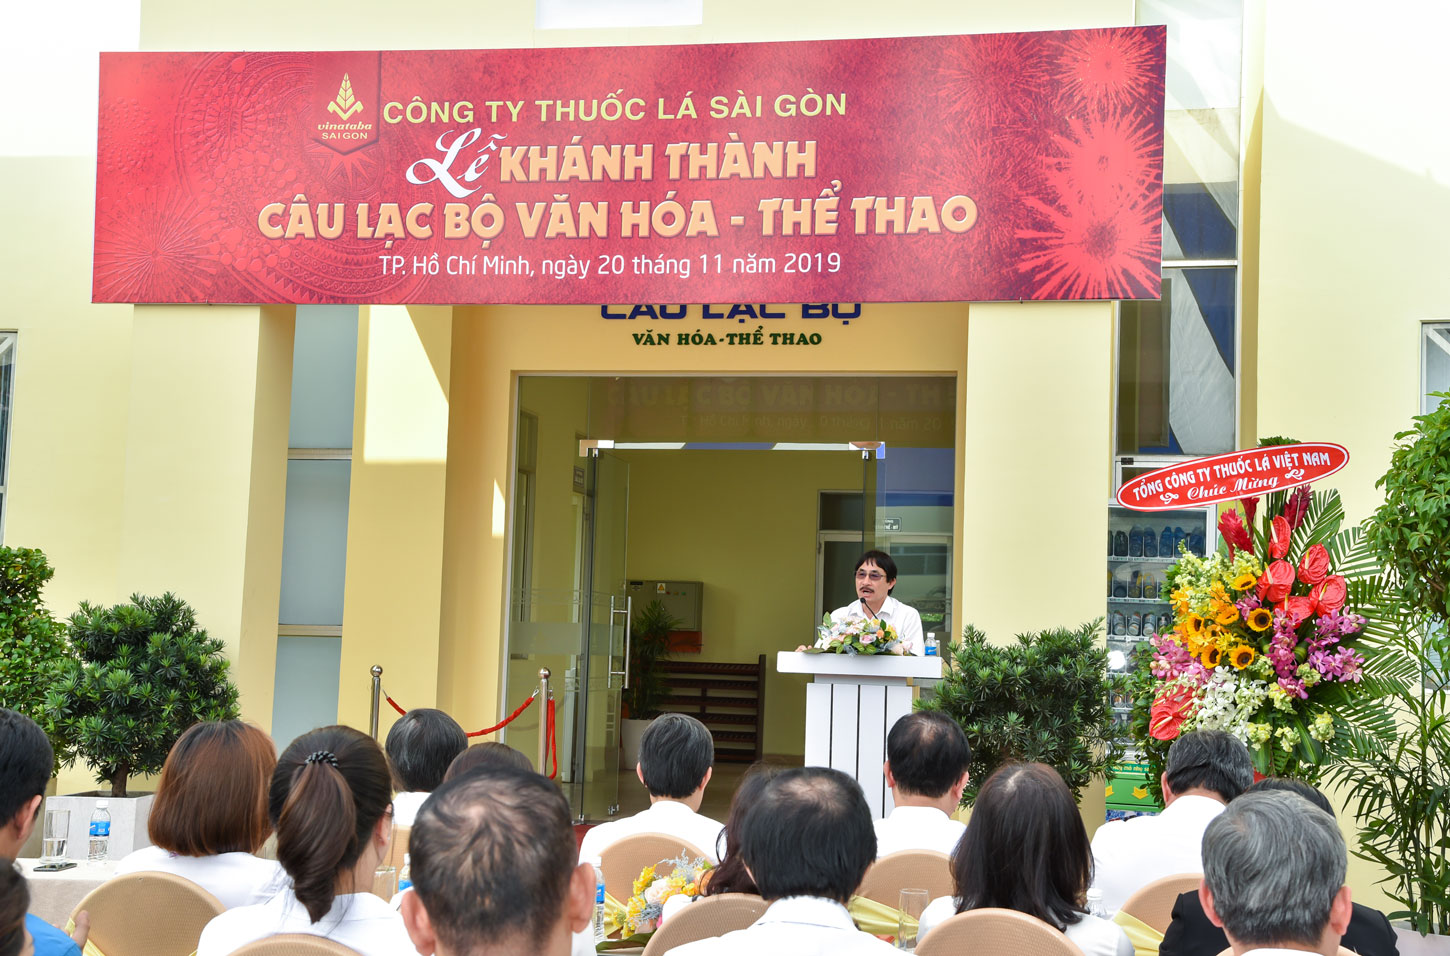 Ông Nguyễn Phương Đông - Chủ tịch Hội đồng Thành viên Công ty phát biểu chỉ đạo tại buổi lễ